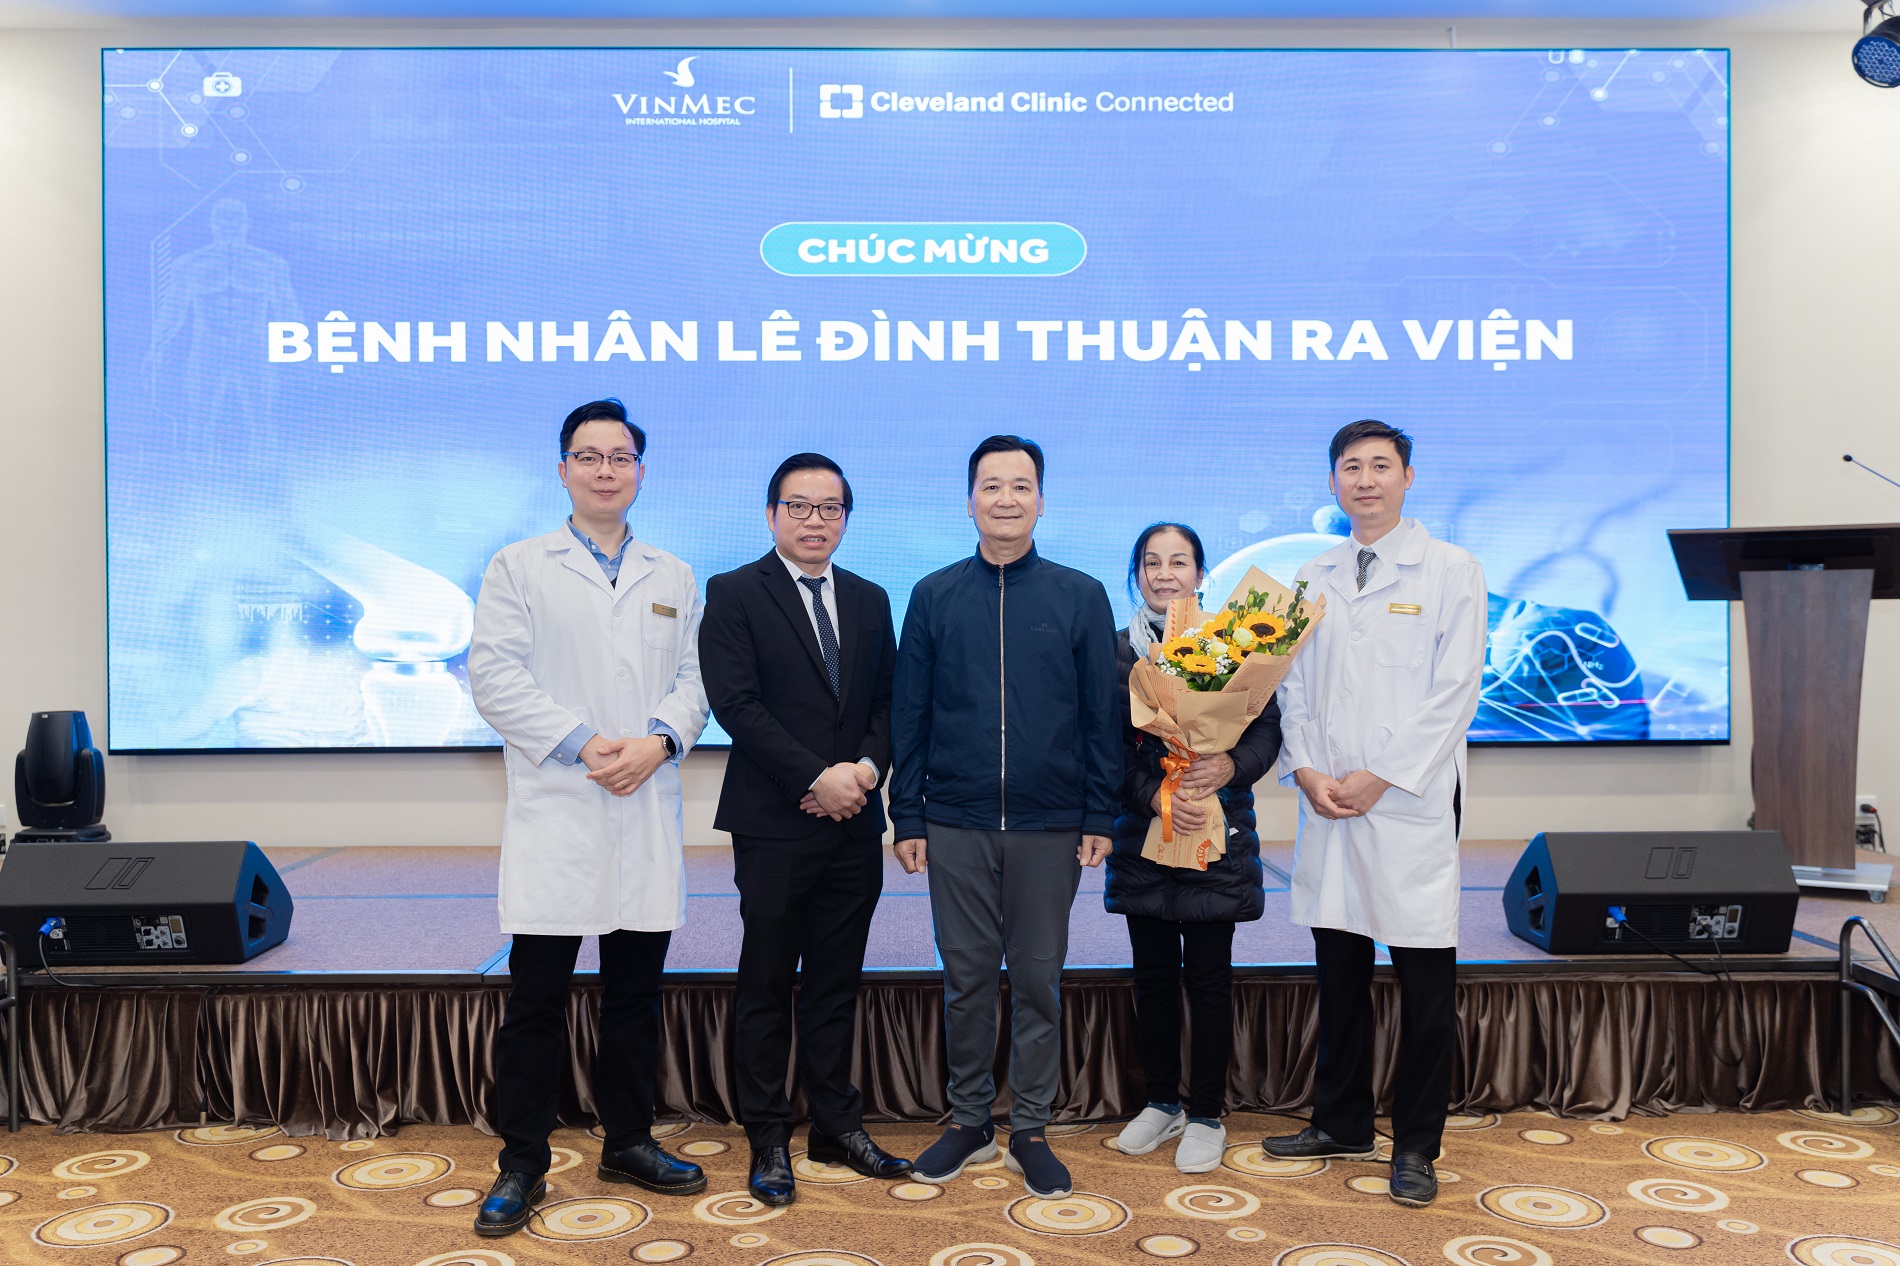 Bệnh nhân Thuận (chính giữa) ra viện trong niềm vui của gia đình và ekip y bác sĩ điều trị - Ảnh: Vinmec